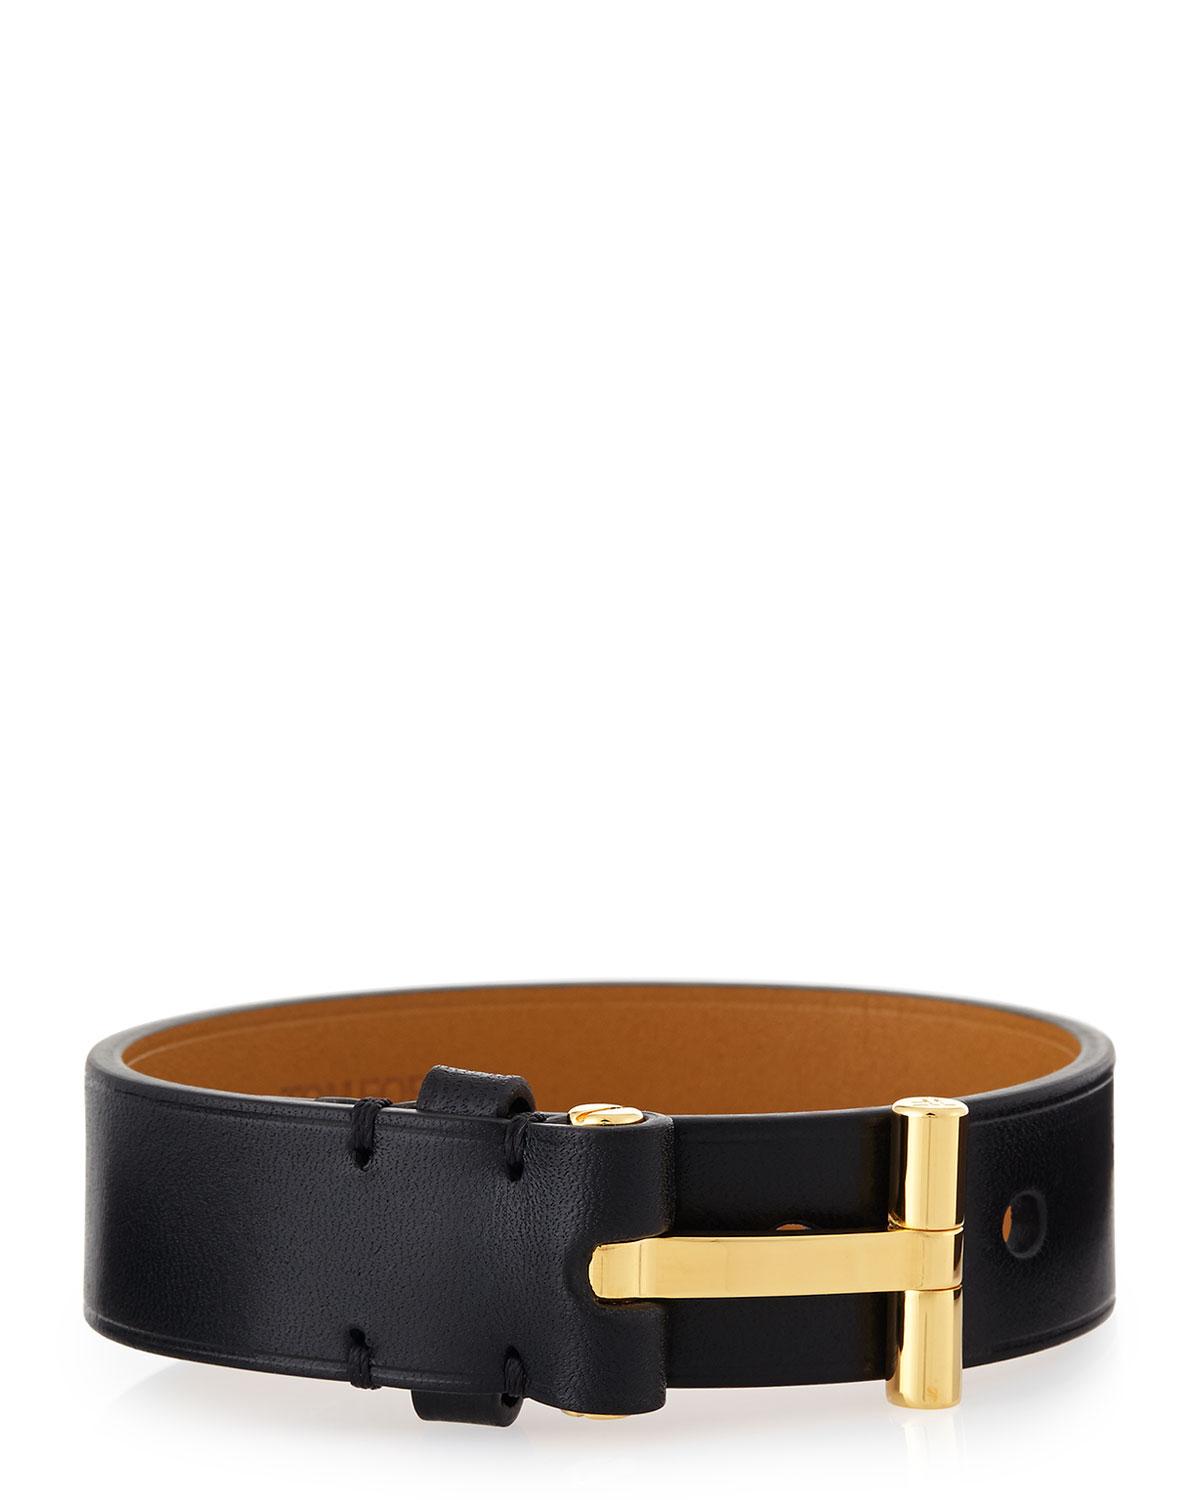 Tom ford Leather Nashville Bracelet in Black | Lyst